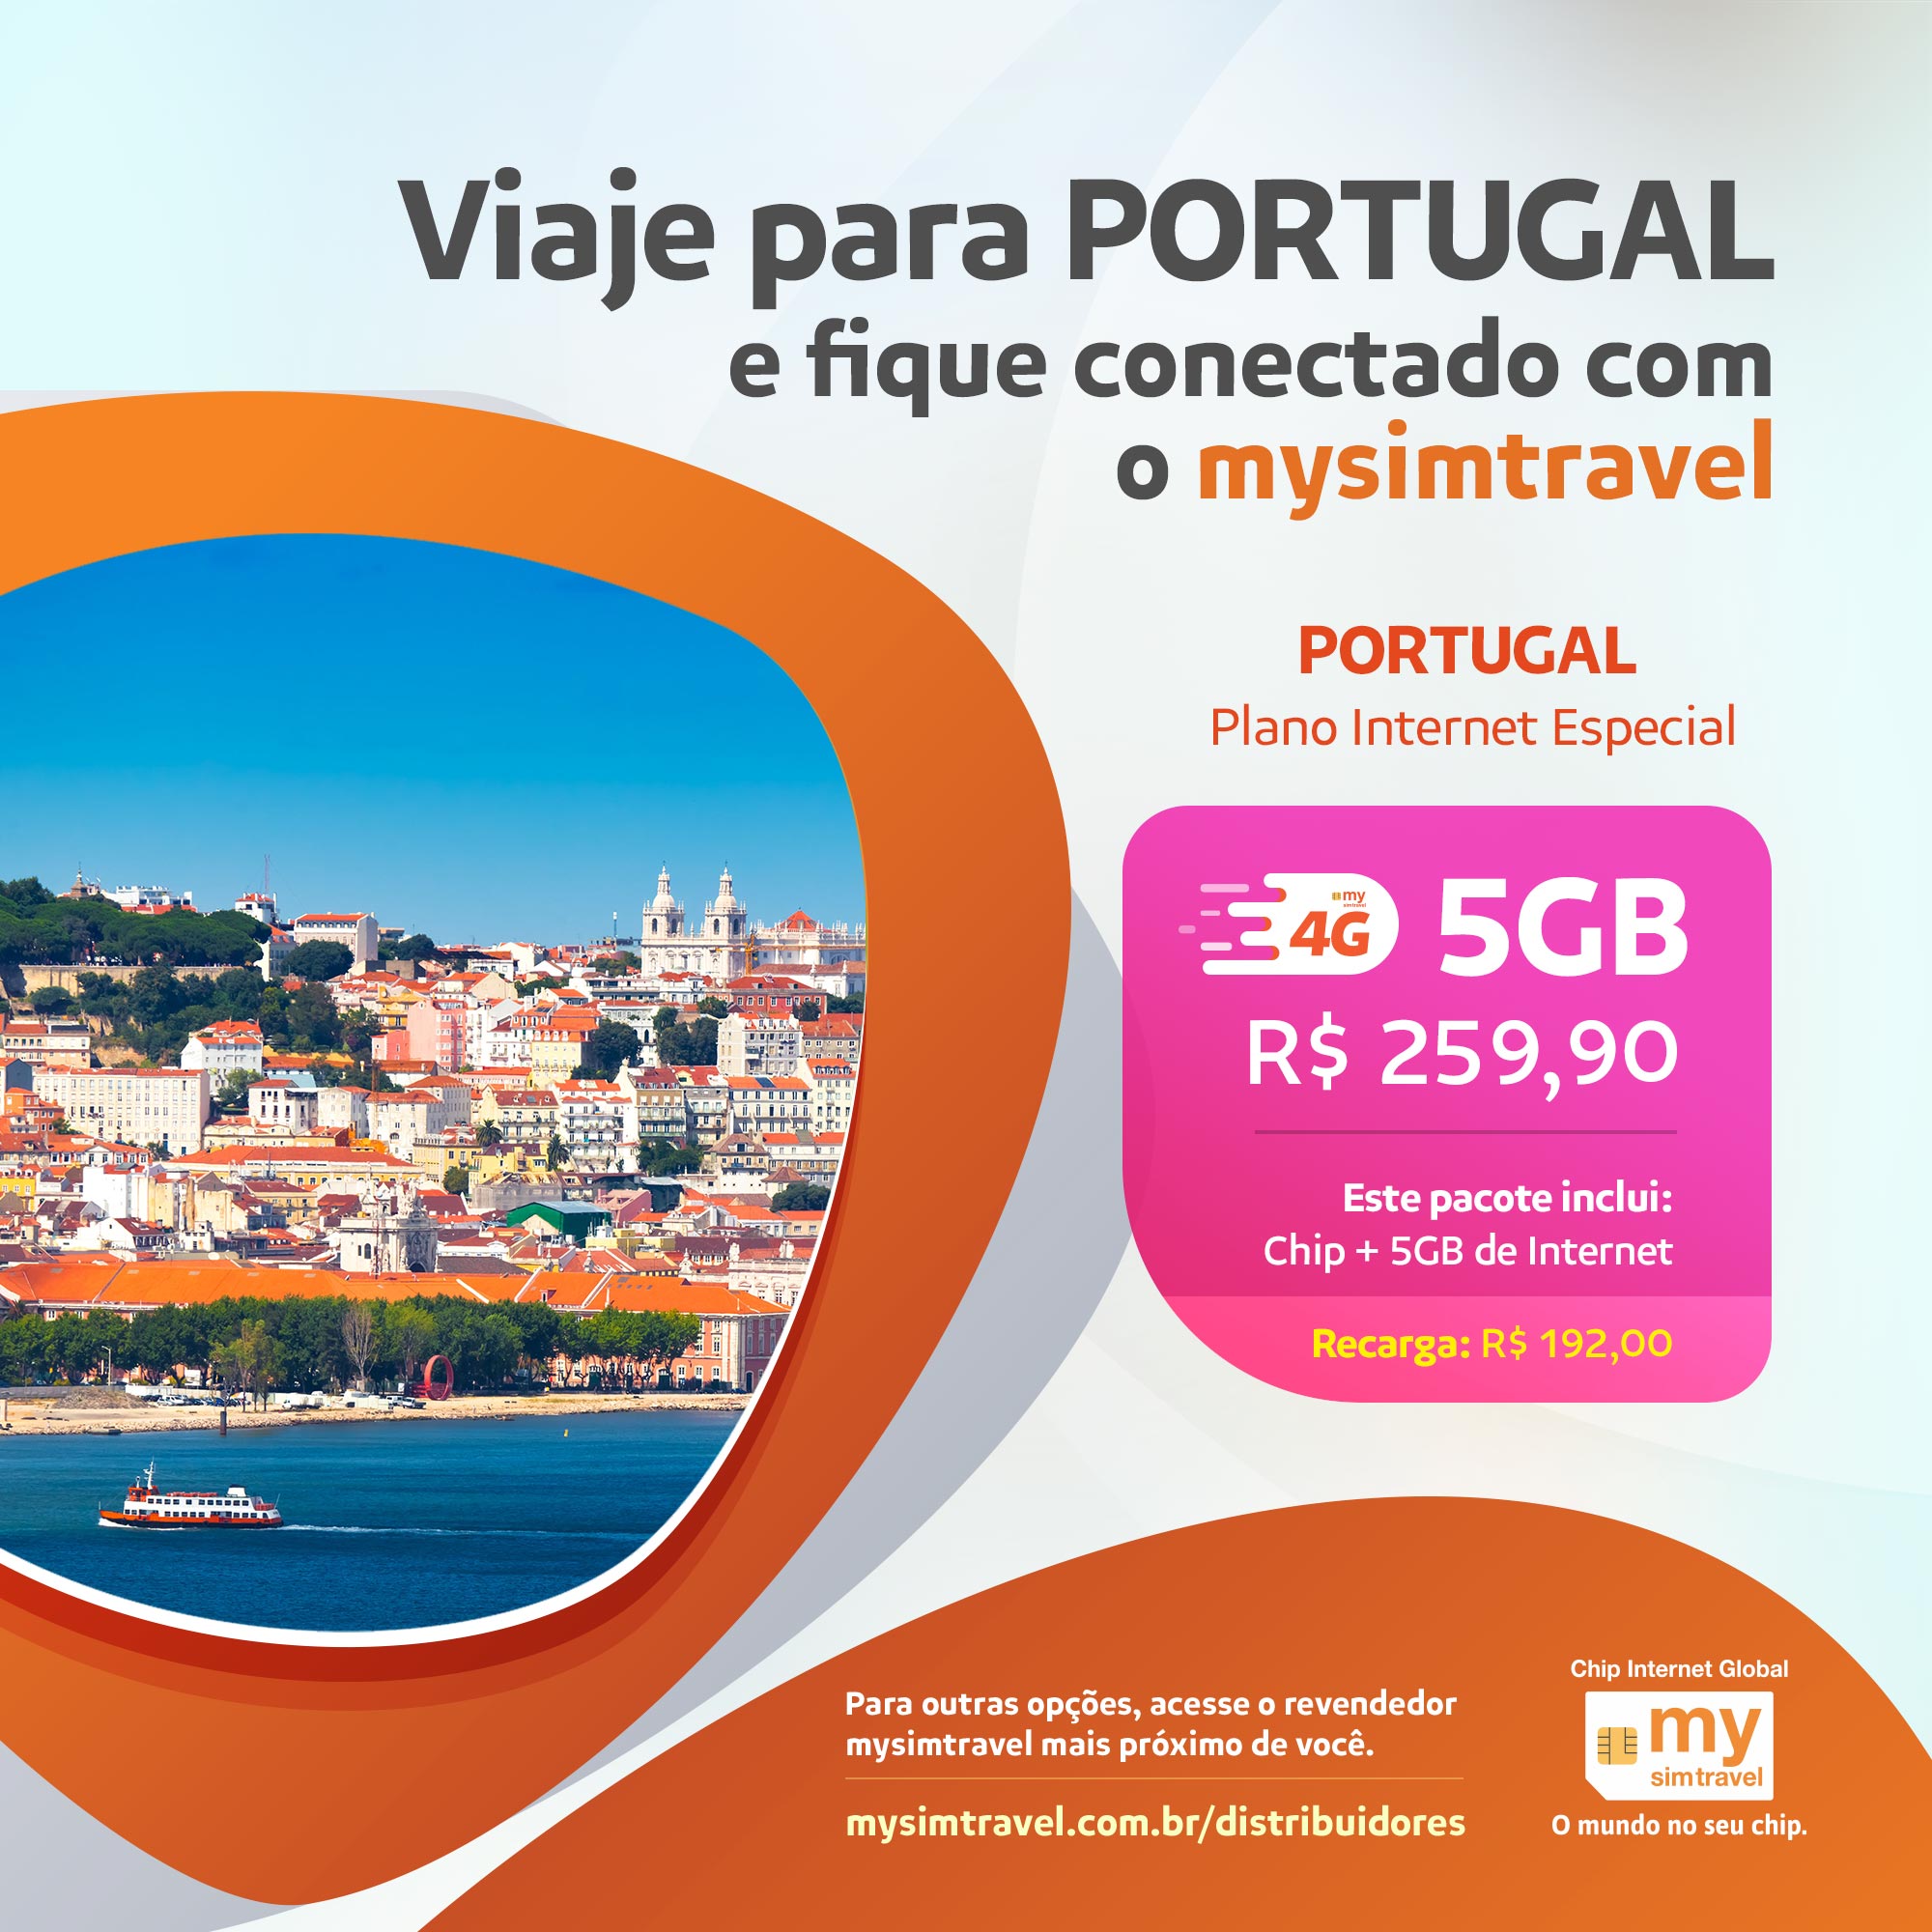 Portugal se supera e em 2018 recebeu 22,8 milhões de turistas estrangeiros